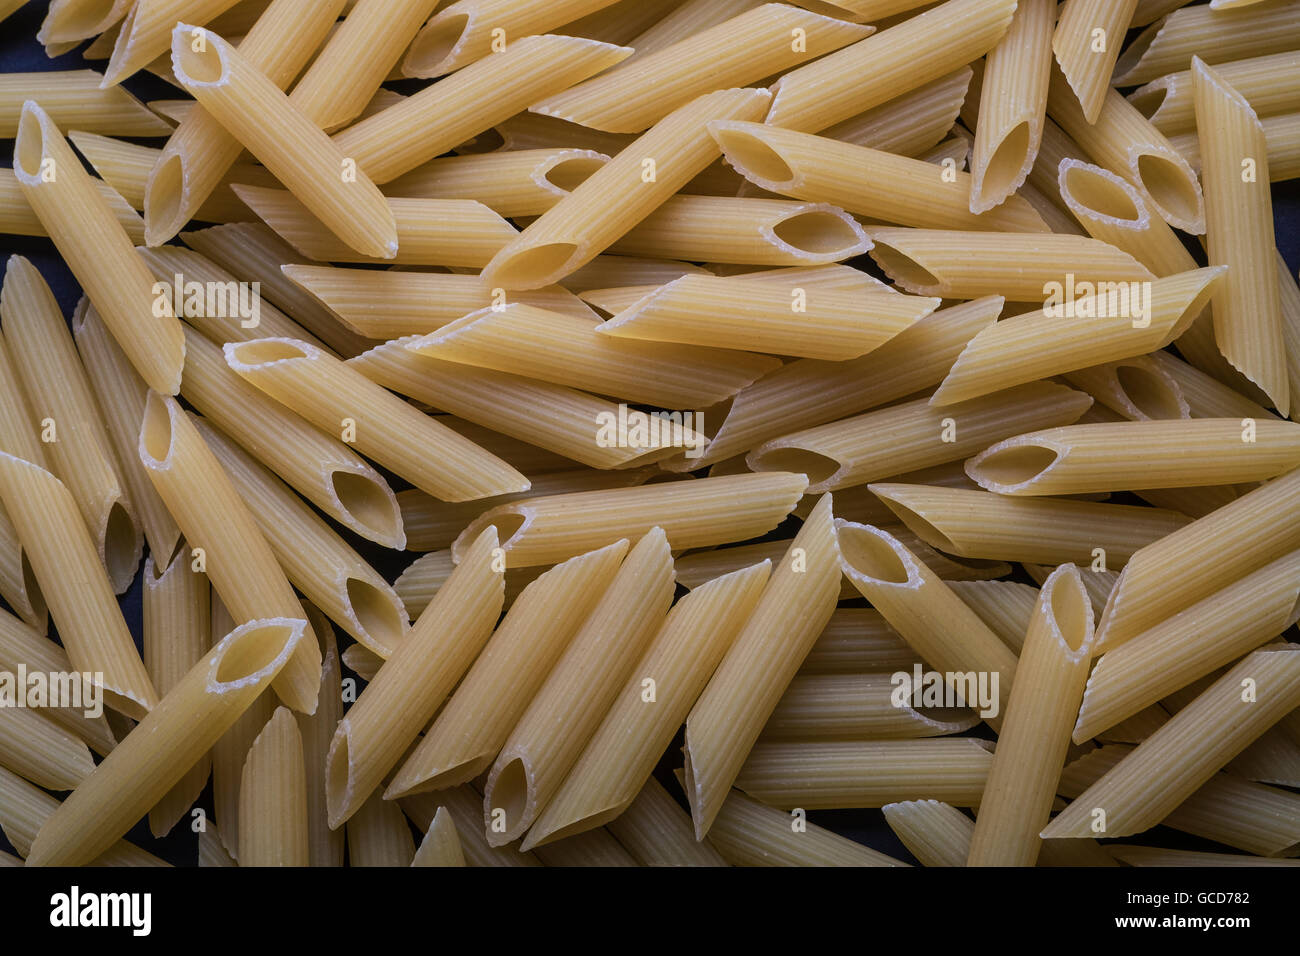 wheat pasta tubes closeup Stock Photo